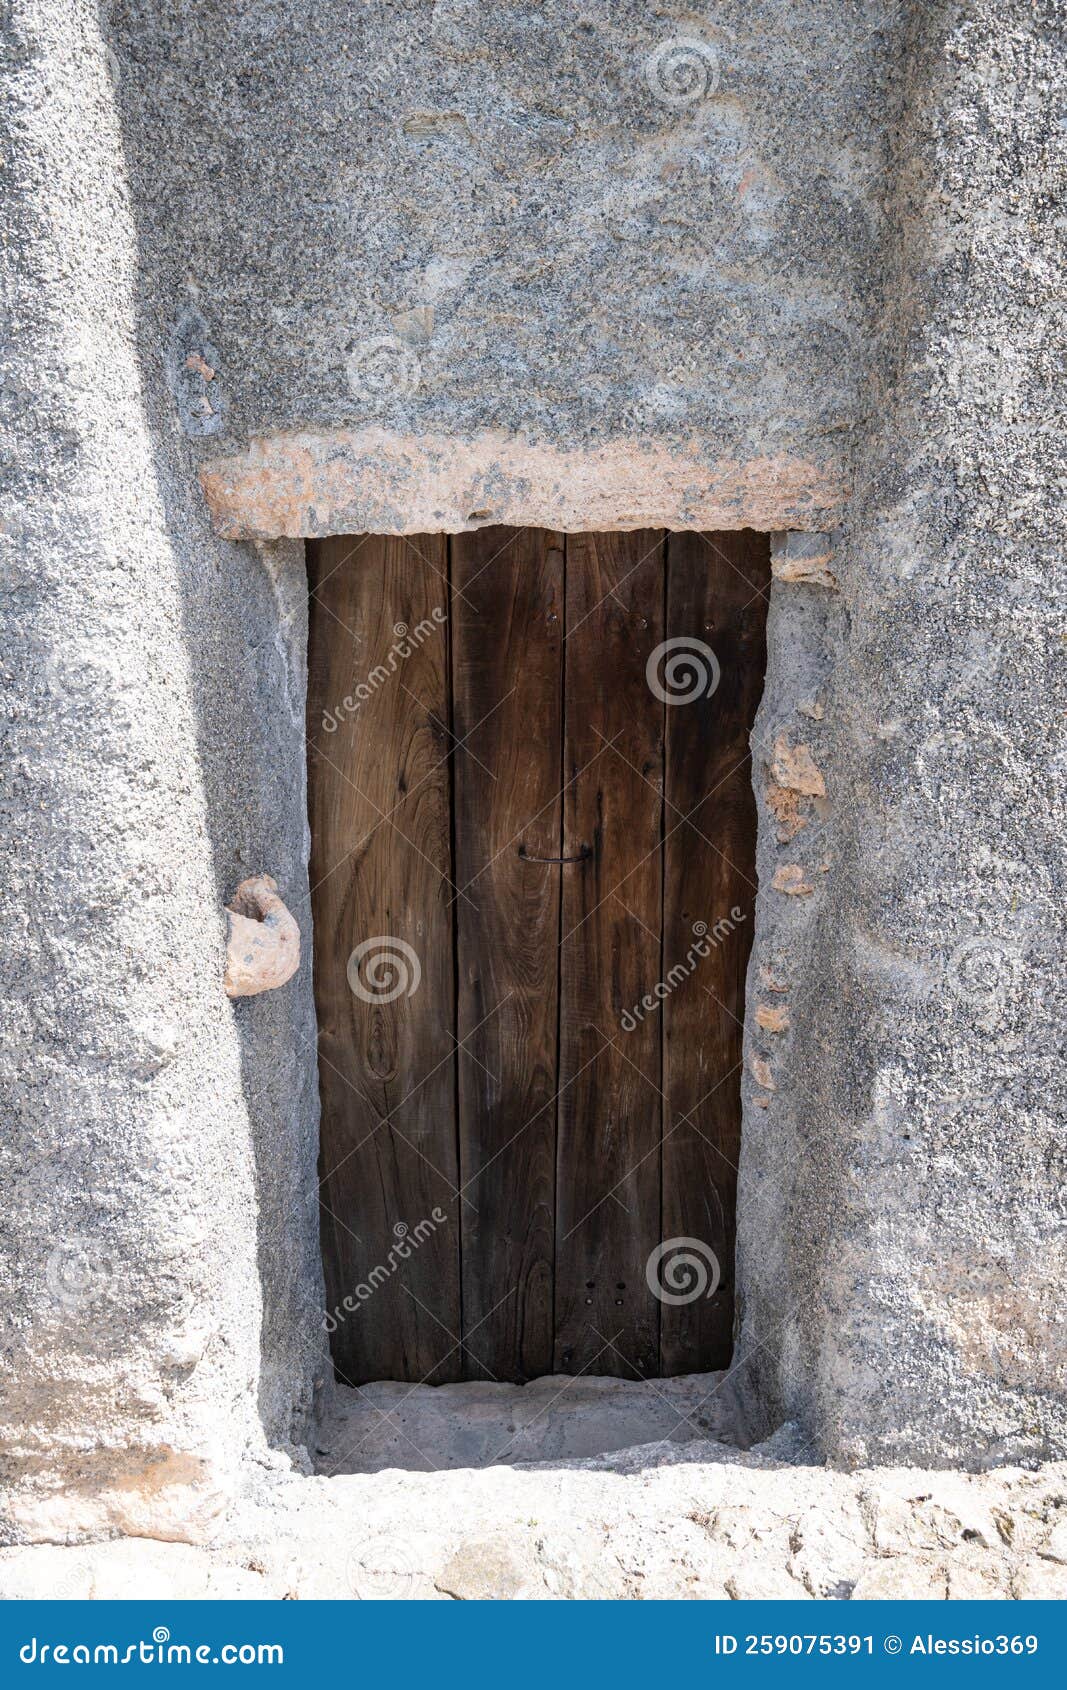 small hand-decorated wooden door